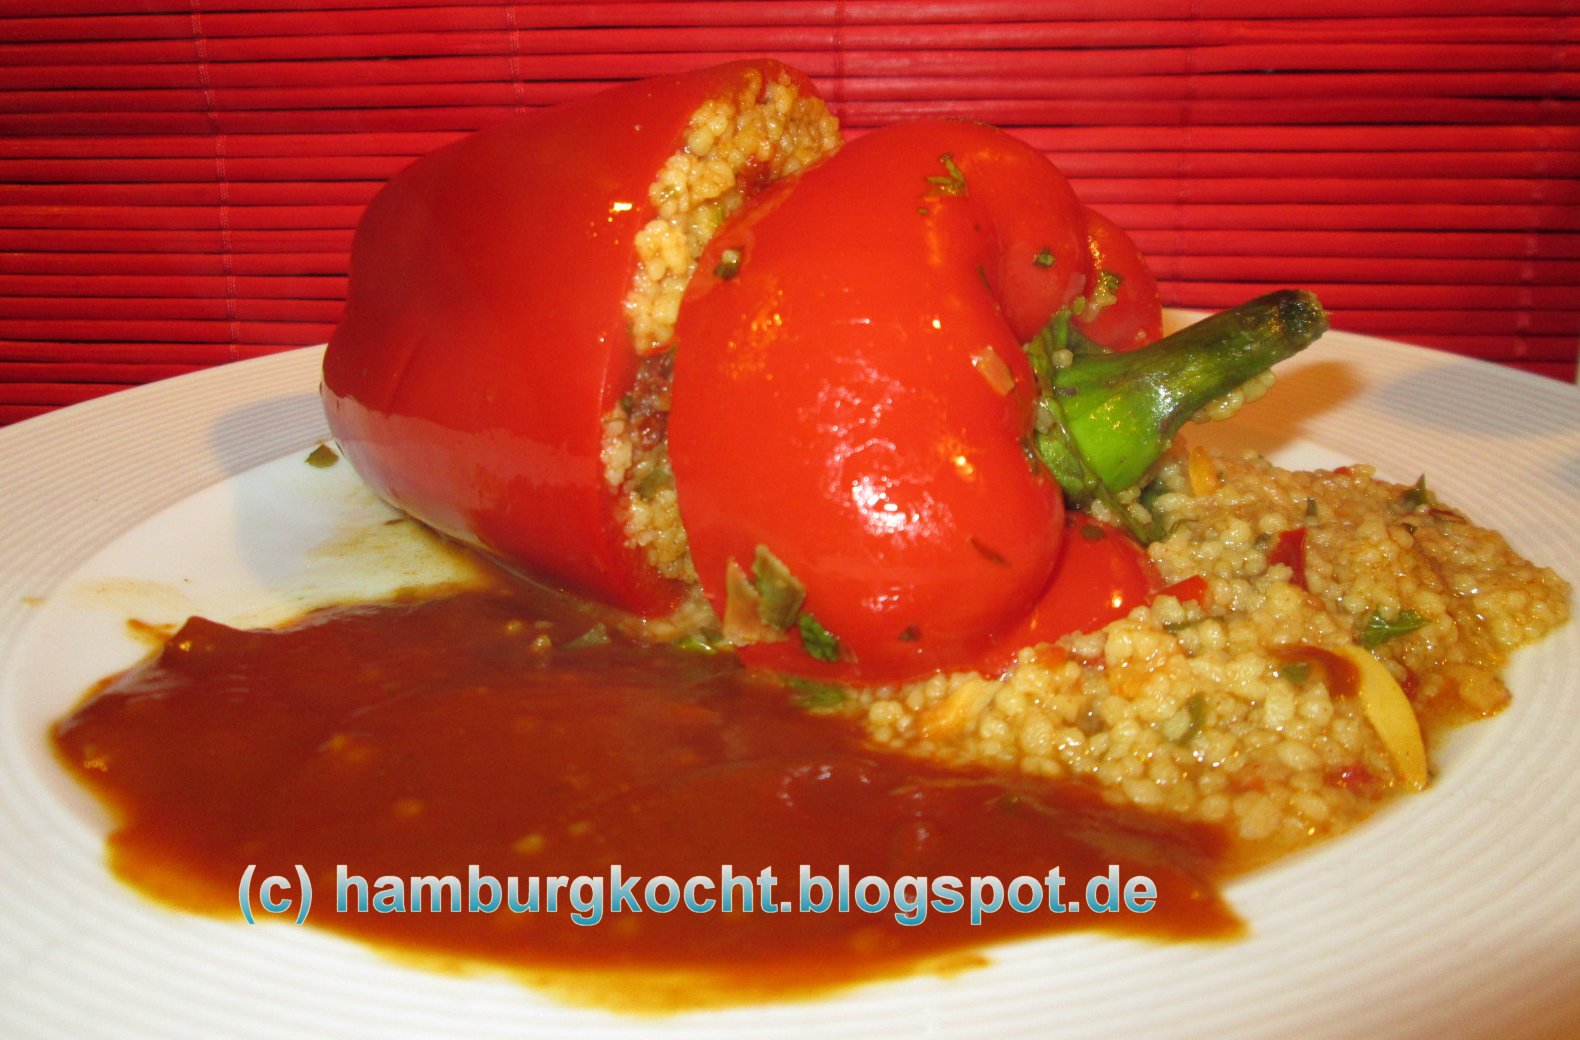 Hamburg kocht!: Kochen mit Tüte: Ofen-Paprika, vegetarisch-afrikanisch ...